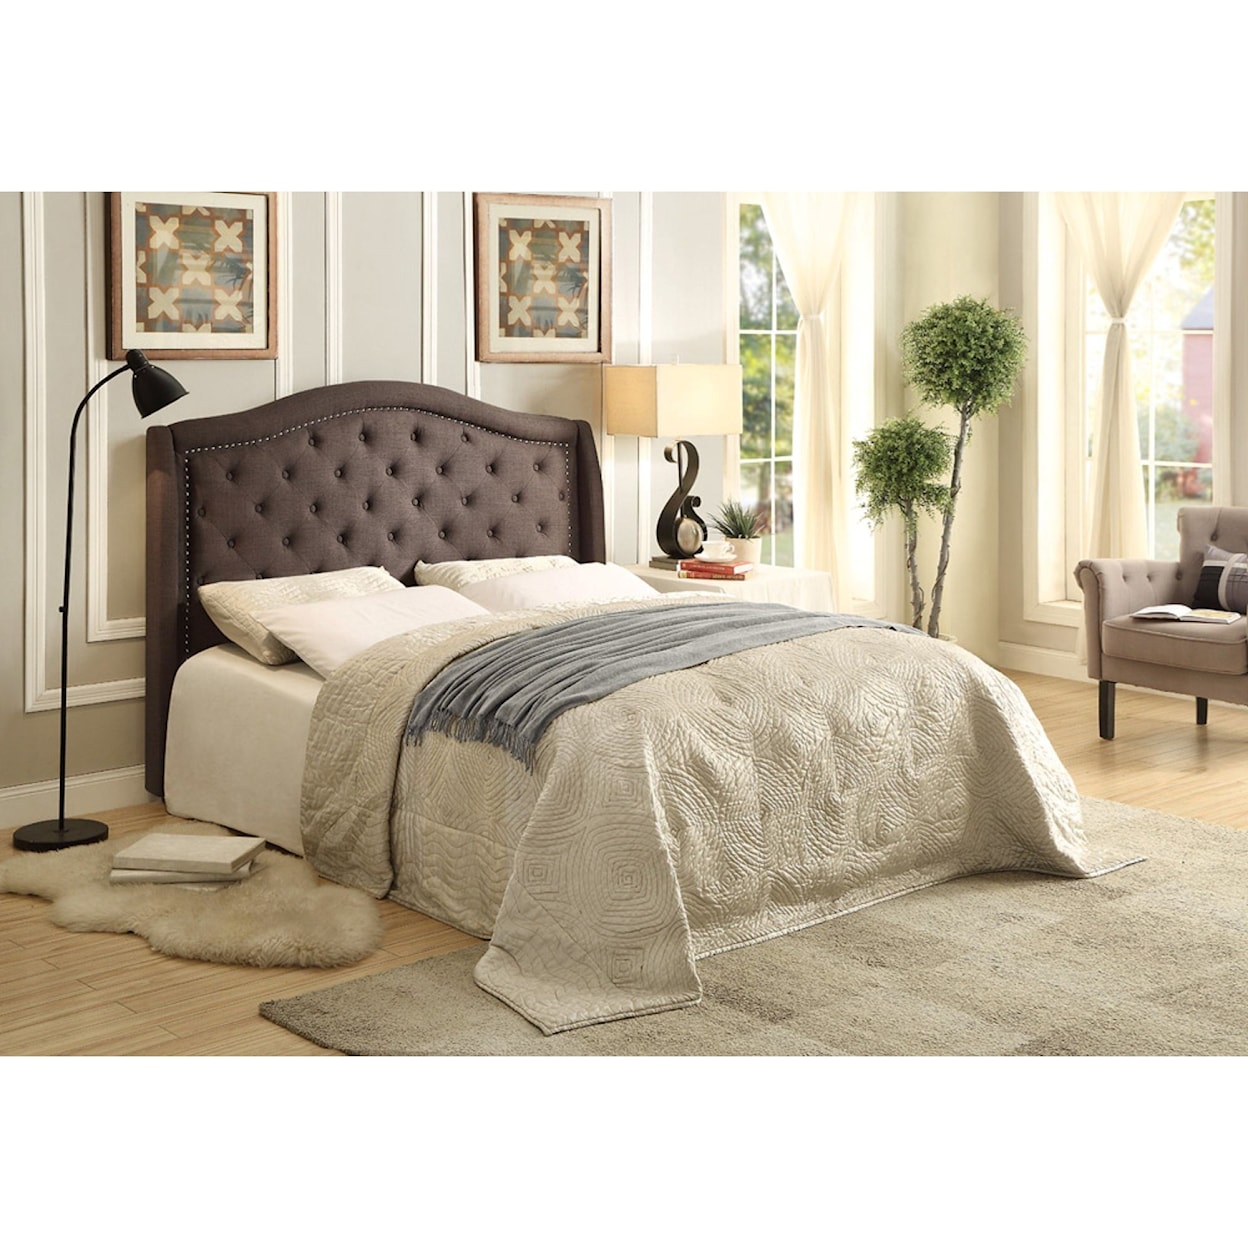 Homelegance Furniture Bryndle King Upholstered Bed